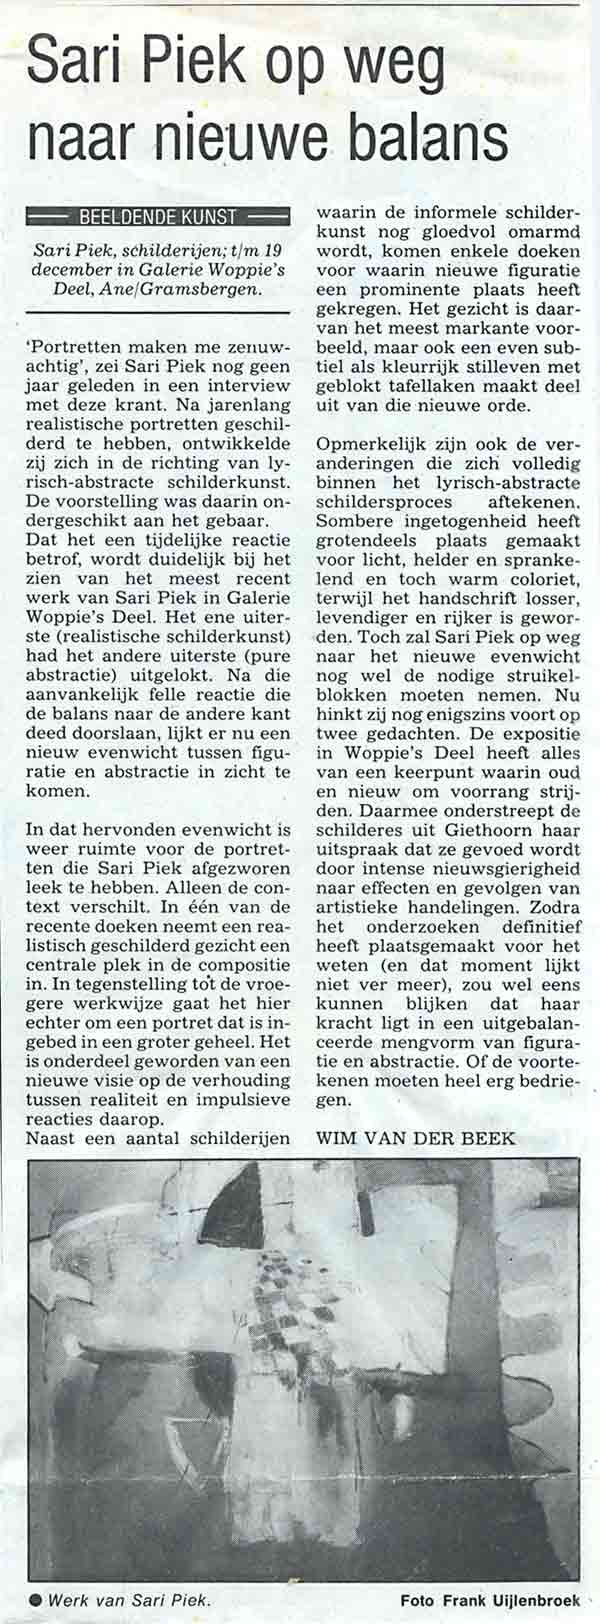 1993 Sari Piek op weg naar nieuwe balans  1-11-93 Wim van de Beek Zwolse Courant